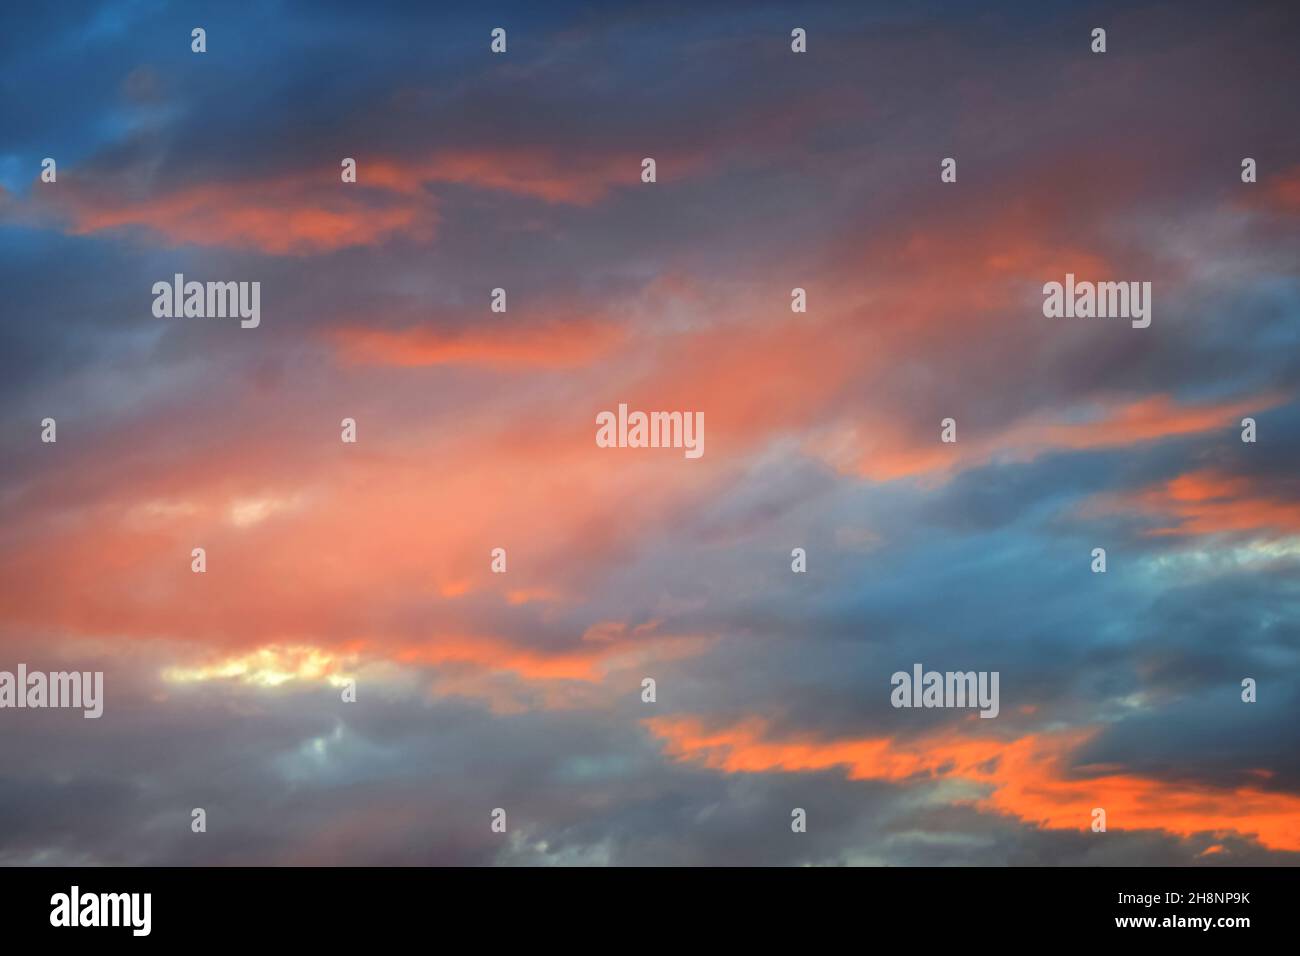 Farbenfrohe, feurige Sonnenuntergänge, dramatischer Himmel in orange und blauen Farben. Natürlicher Hintergrund. Lichtstrahlen, die durch dunkle Wolken leuchten. Stockfoto